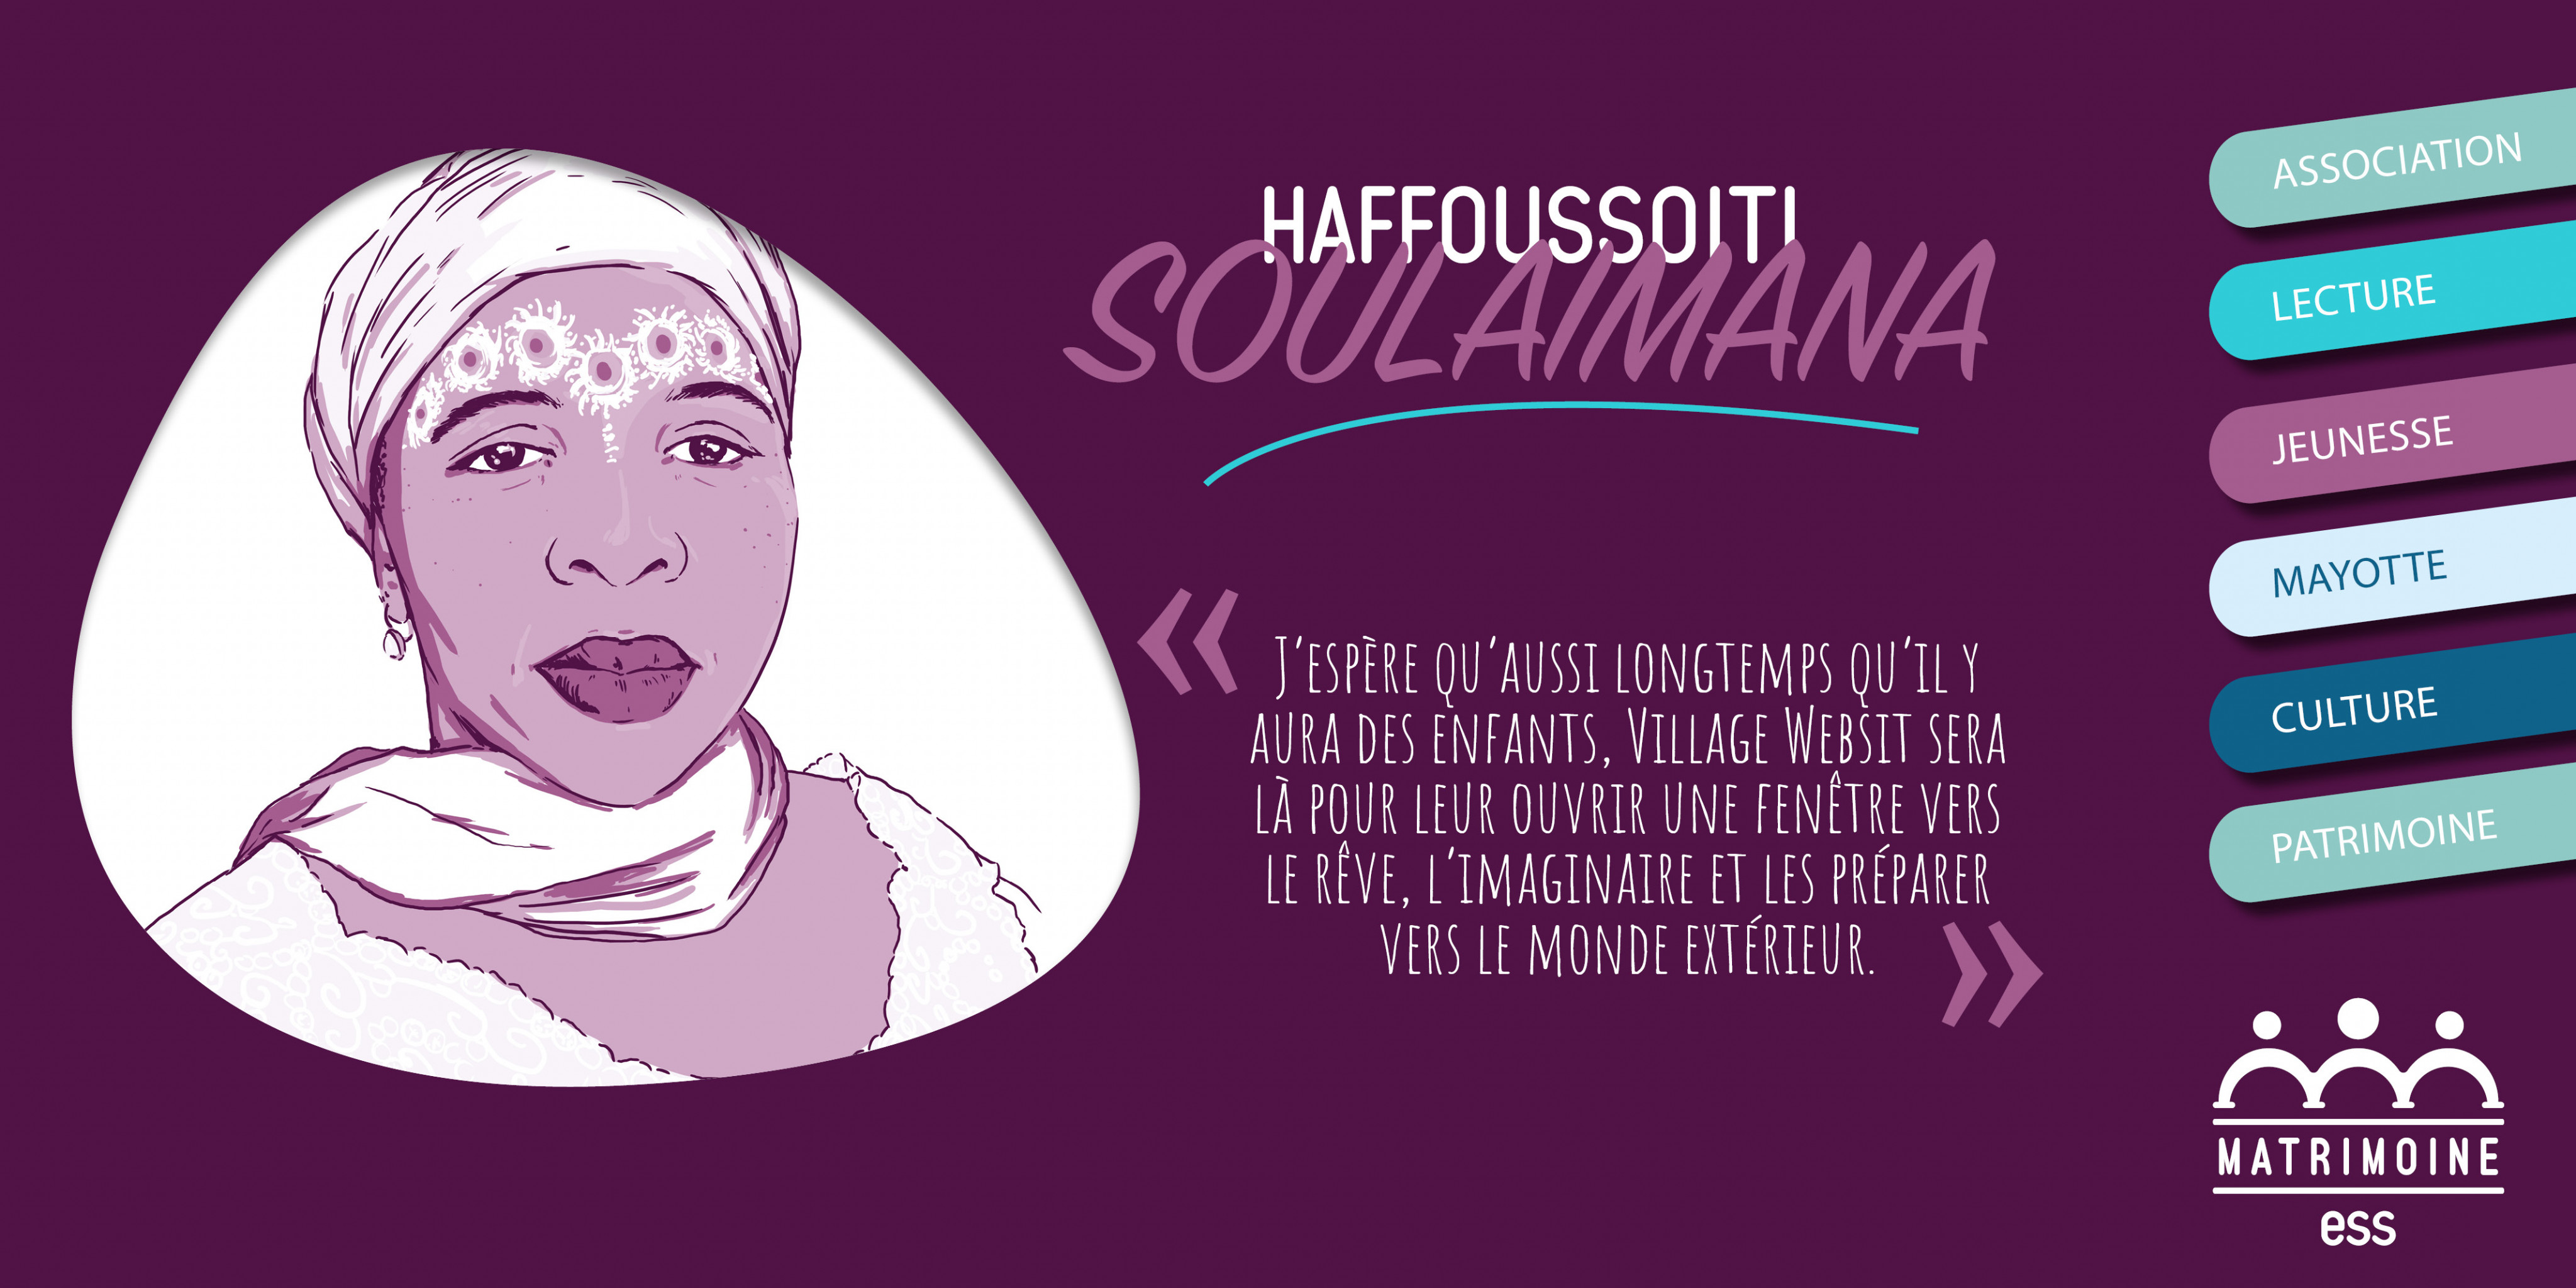 Portrait de Haffoussoiti Soulaimana, Présidente de l'association Village Websit 